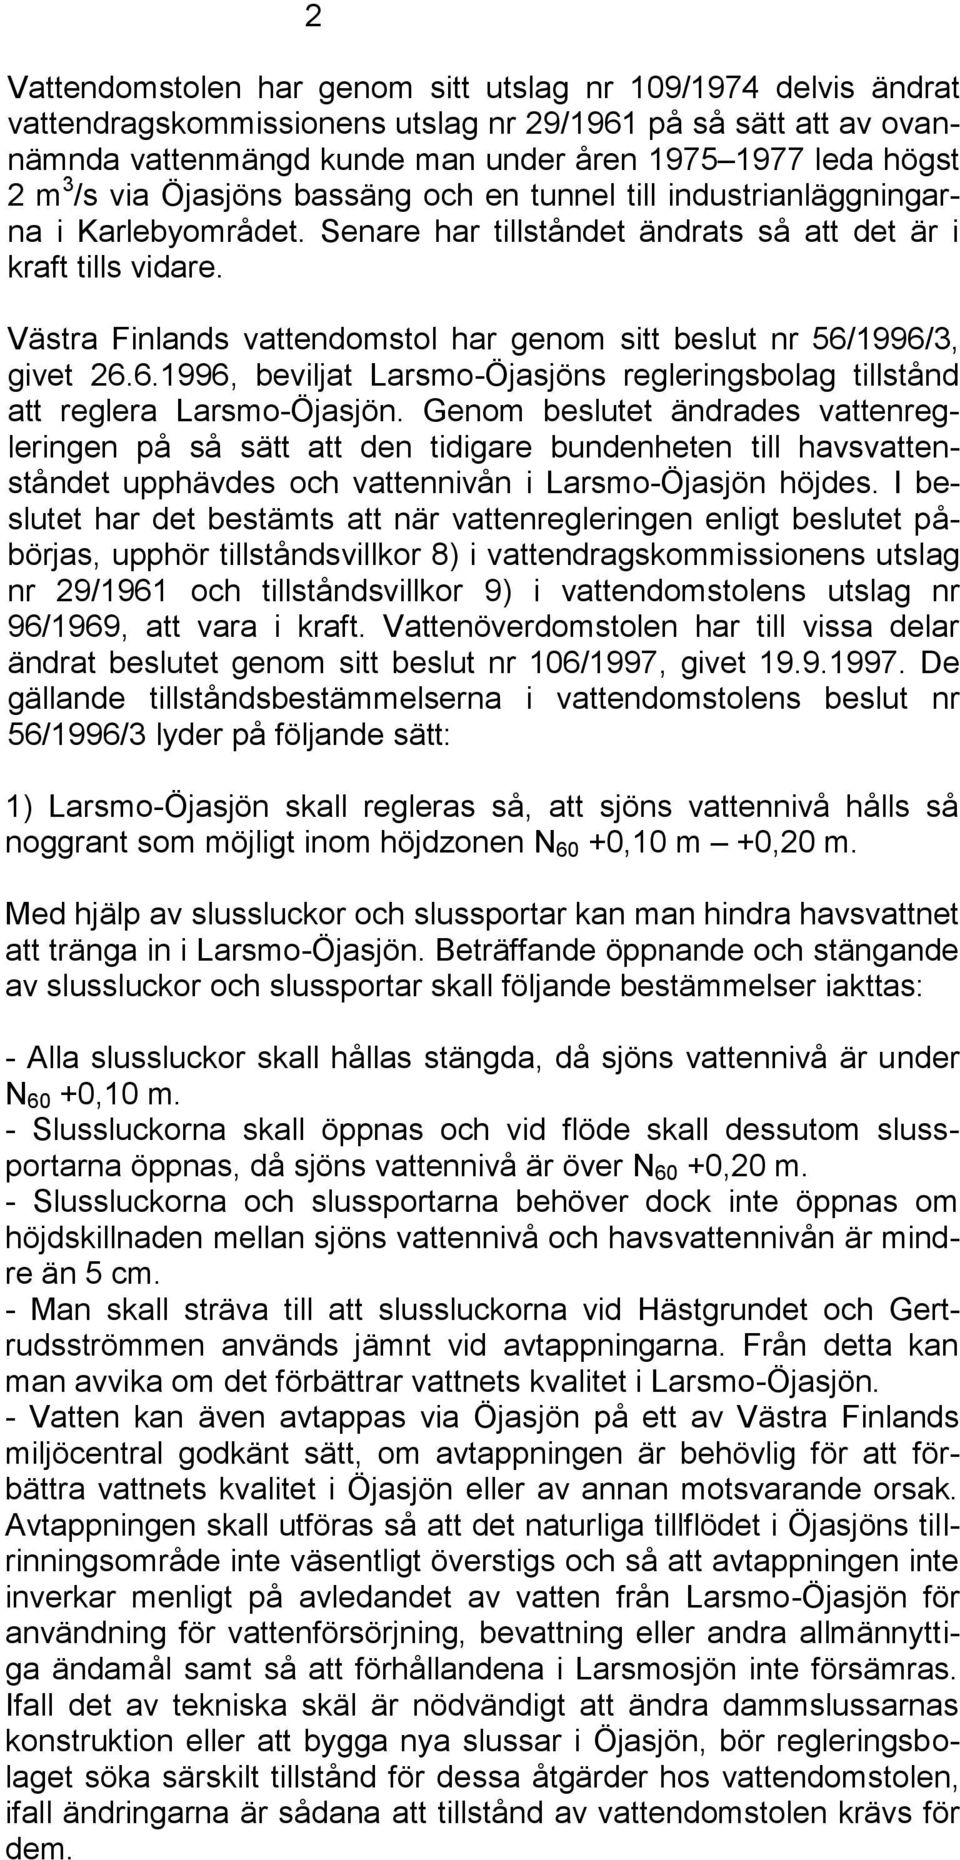 Västra Finlands vattendomstol har genom sitt beslut nr 56/1996/3, givet 26.6.1996, beviljat Larsmo-Öjasjöns regleringsbolag tillstånd att reglera Larsmo-Öjasjön.